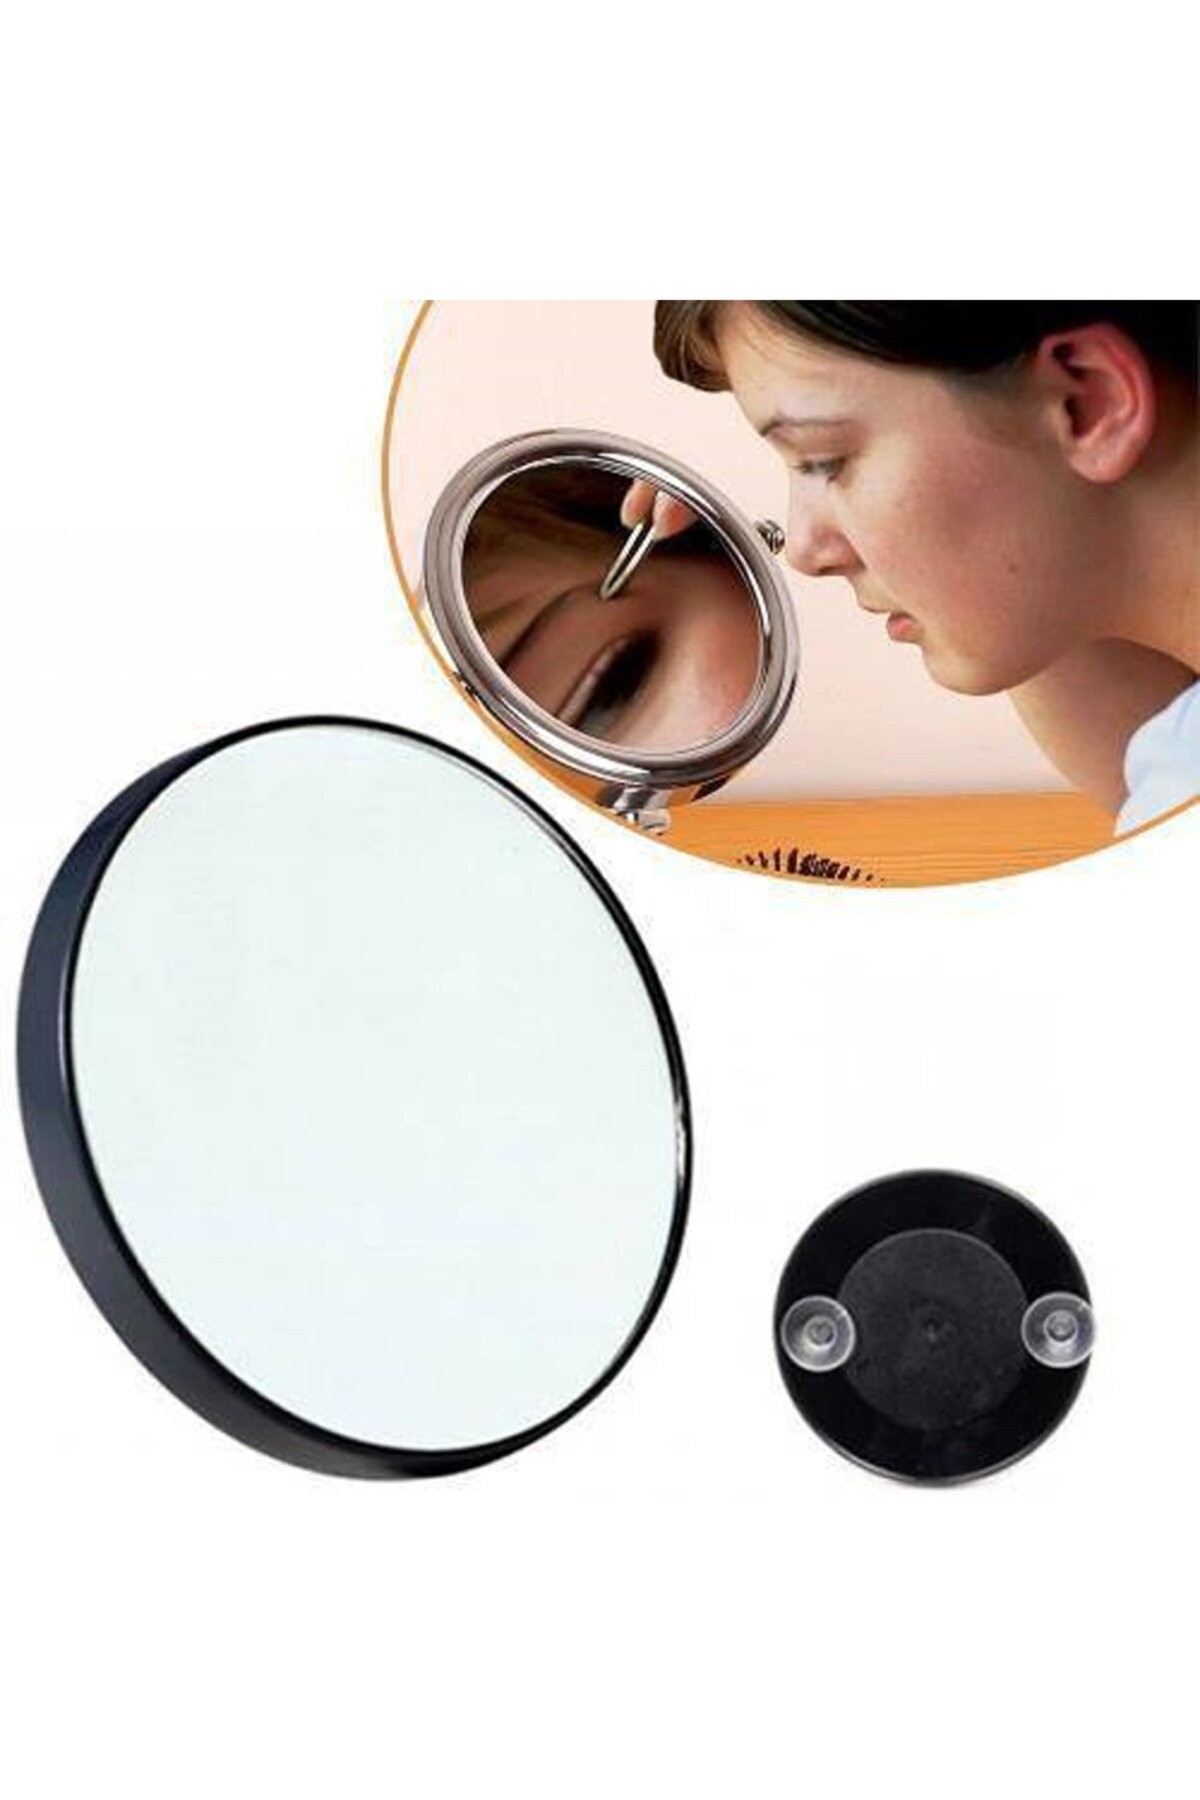 Büyüteçli Vantuzlu Ayna, 15X Büyüteç Makyaj Aynası, Sabitlenebilir, Pratik Kullanışlı 9cm